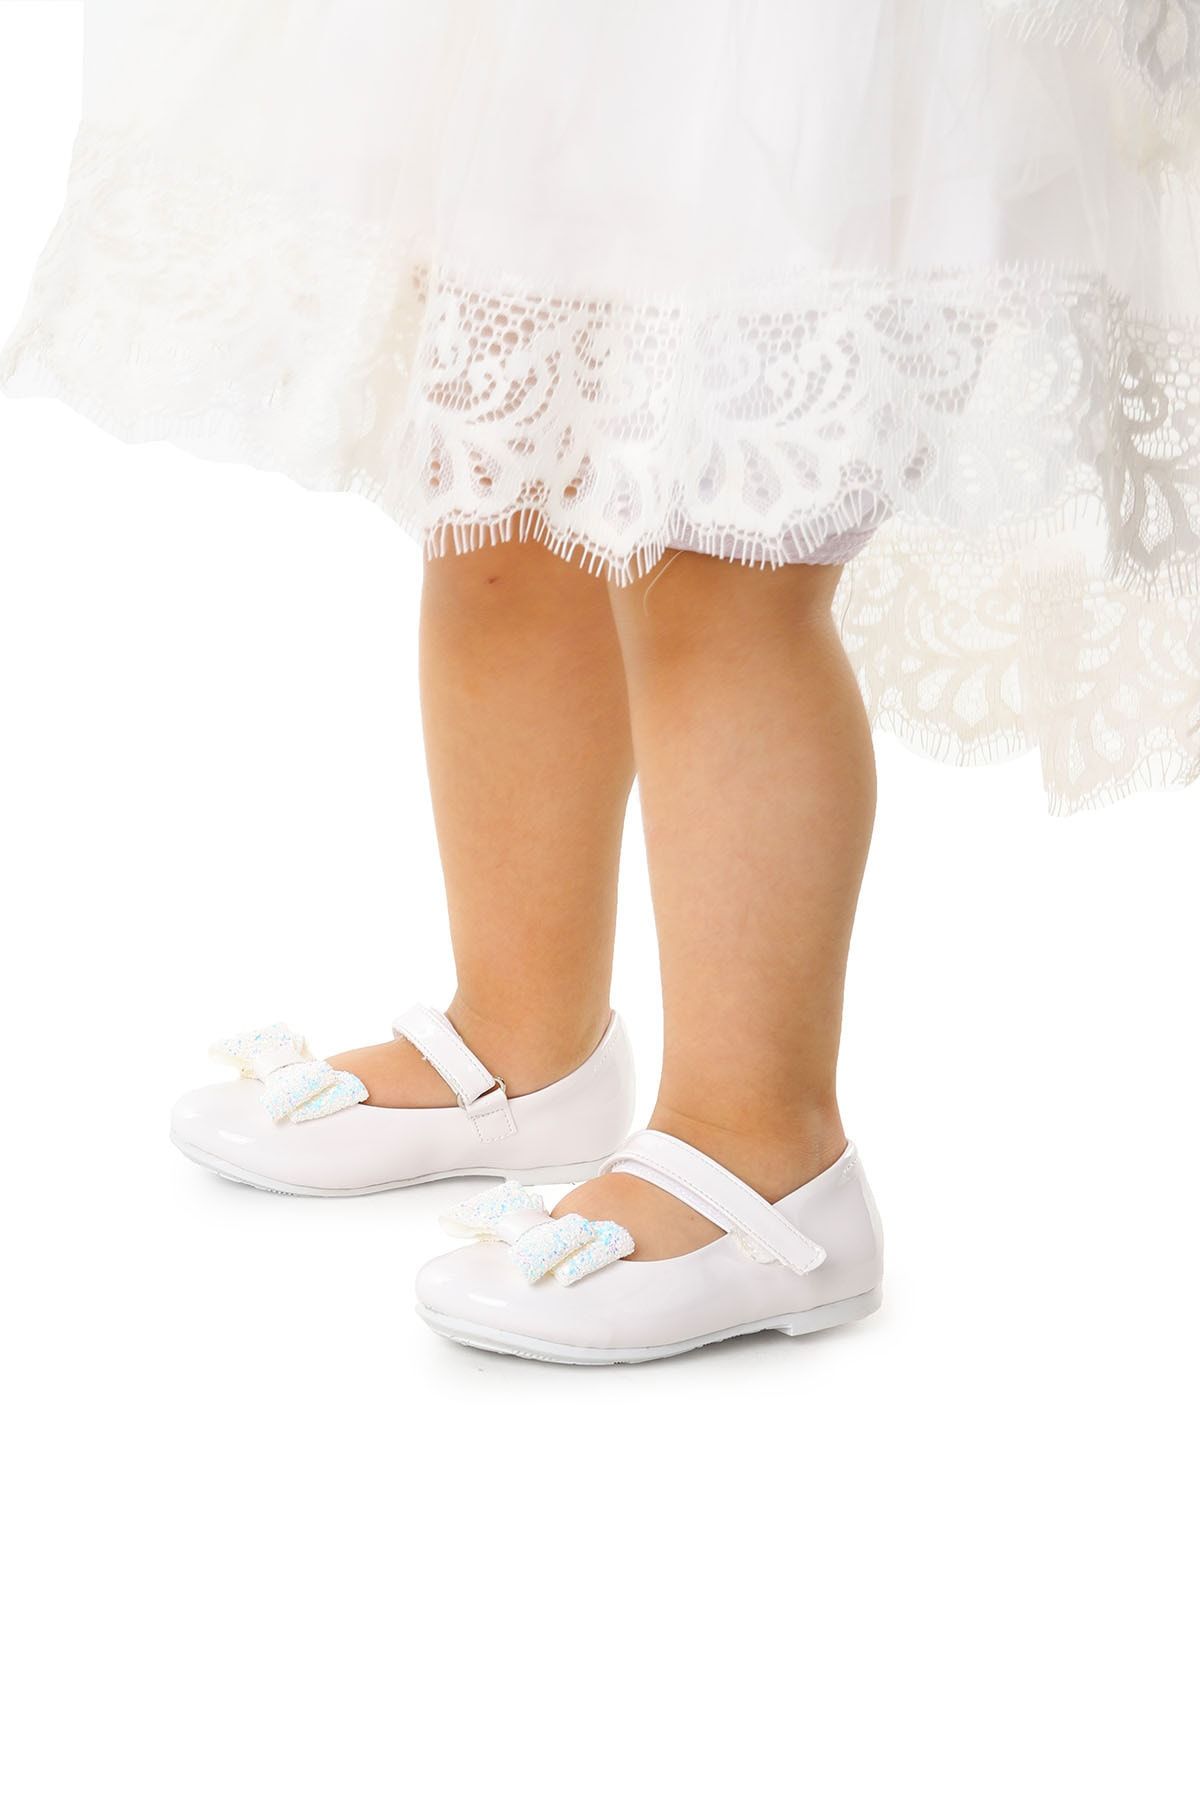 Kiko Kids Cırtlı Fiyonklu Kız Çocuk Babet Ayakkabı Ege 200 Rugan